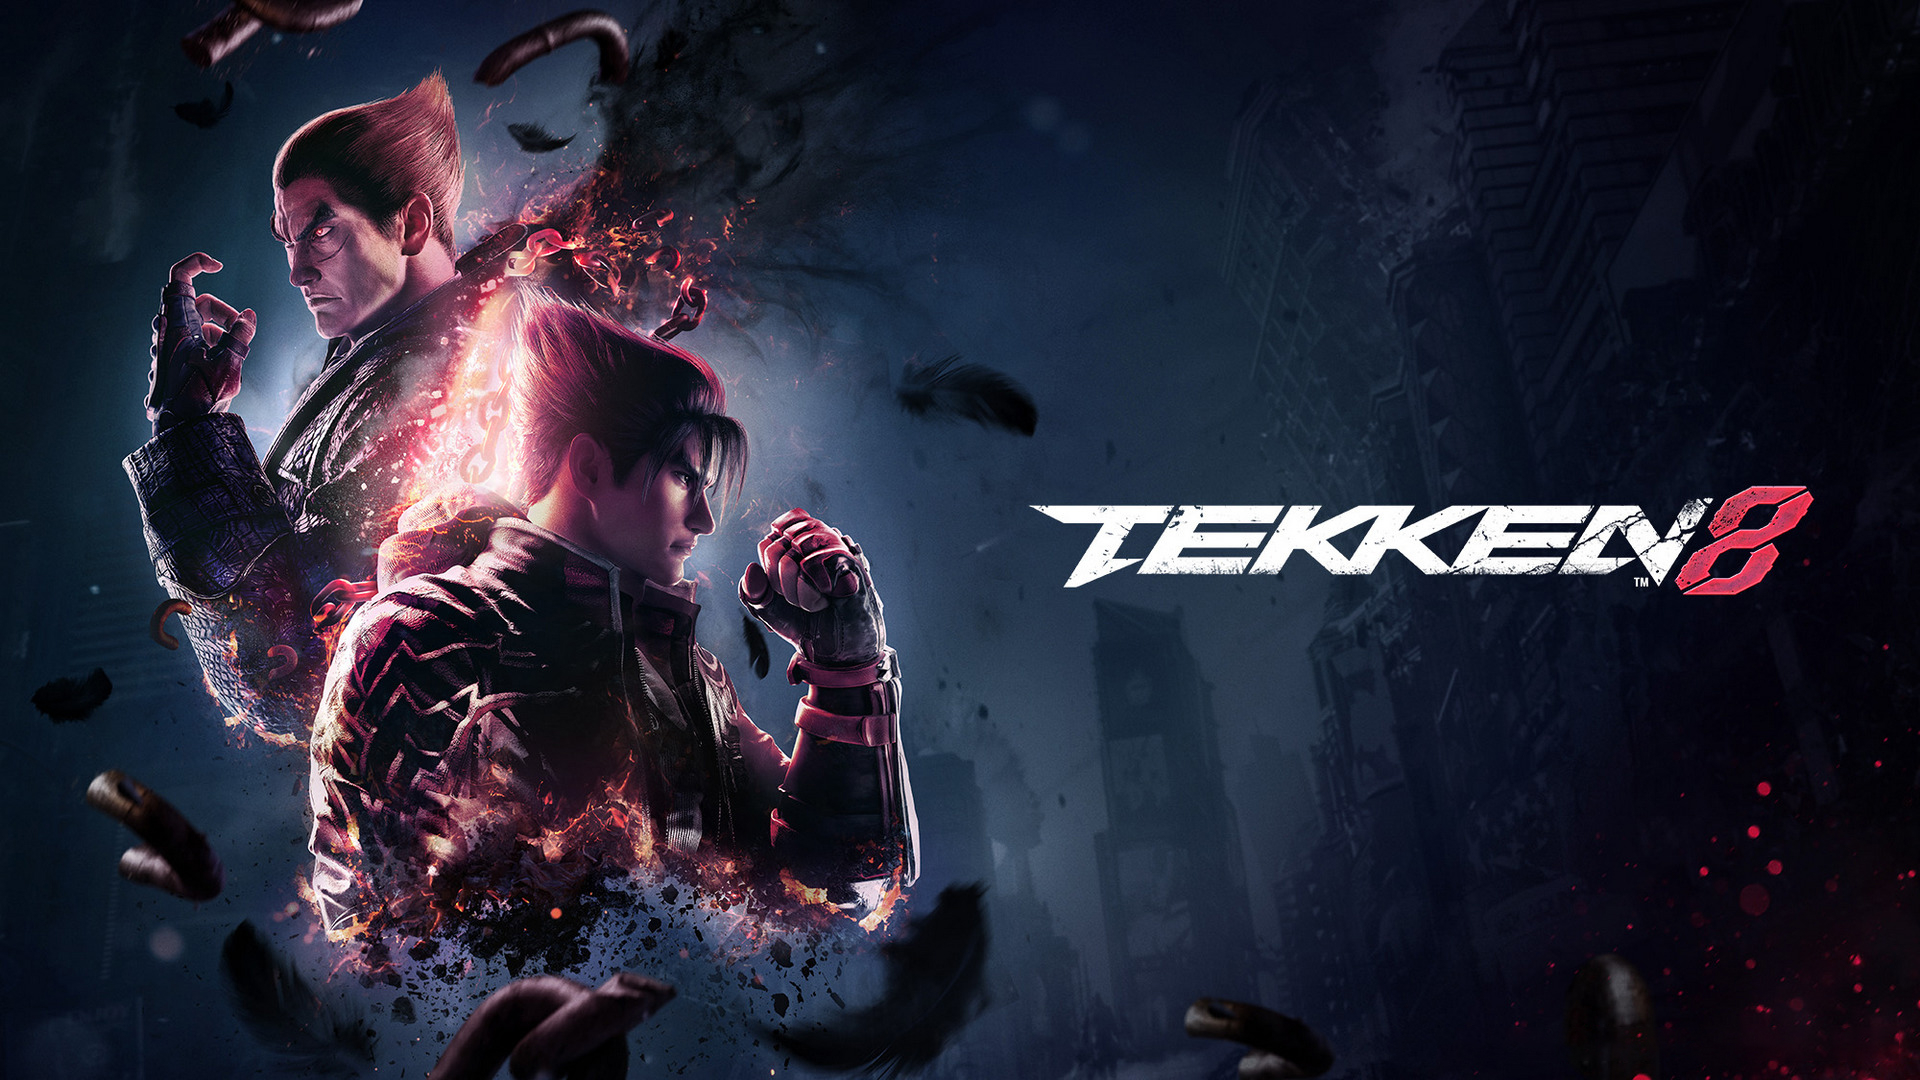 Tekken 8 – долгожданное возвращение культового файтинга, получившего абсолютно новый режим